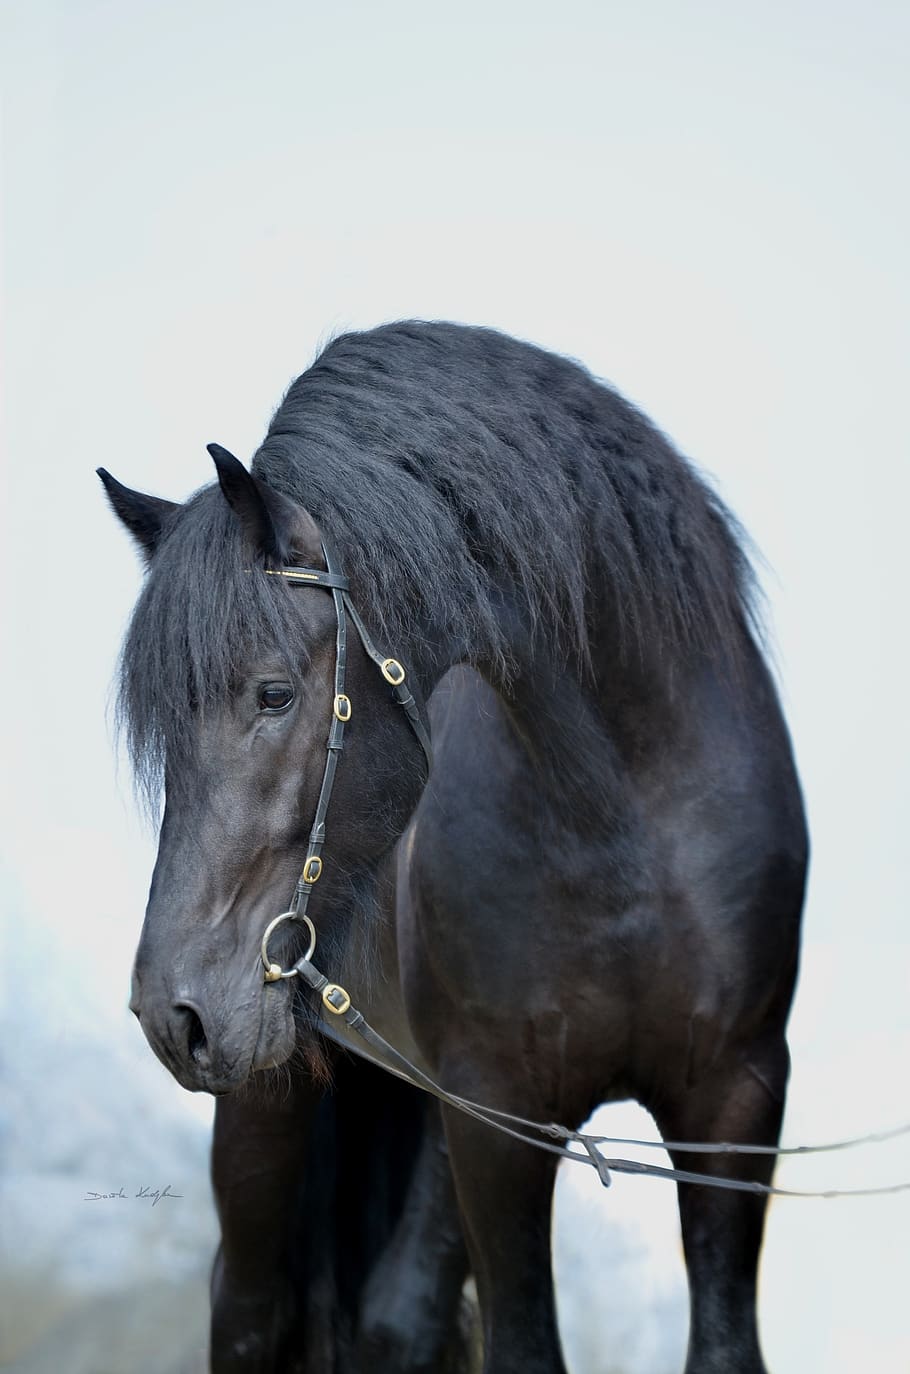 cavalo, cavalos, cavalo preto, fresian, cavalo fresiano, sangue quente, retrato do cavalo, garanhão, juba, beleza